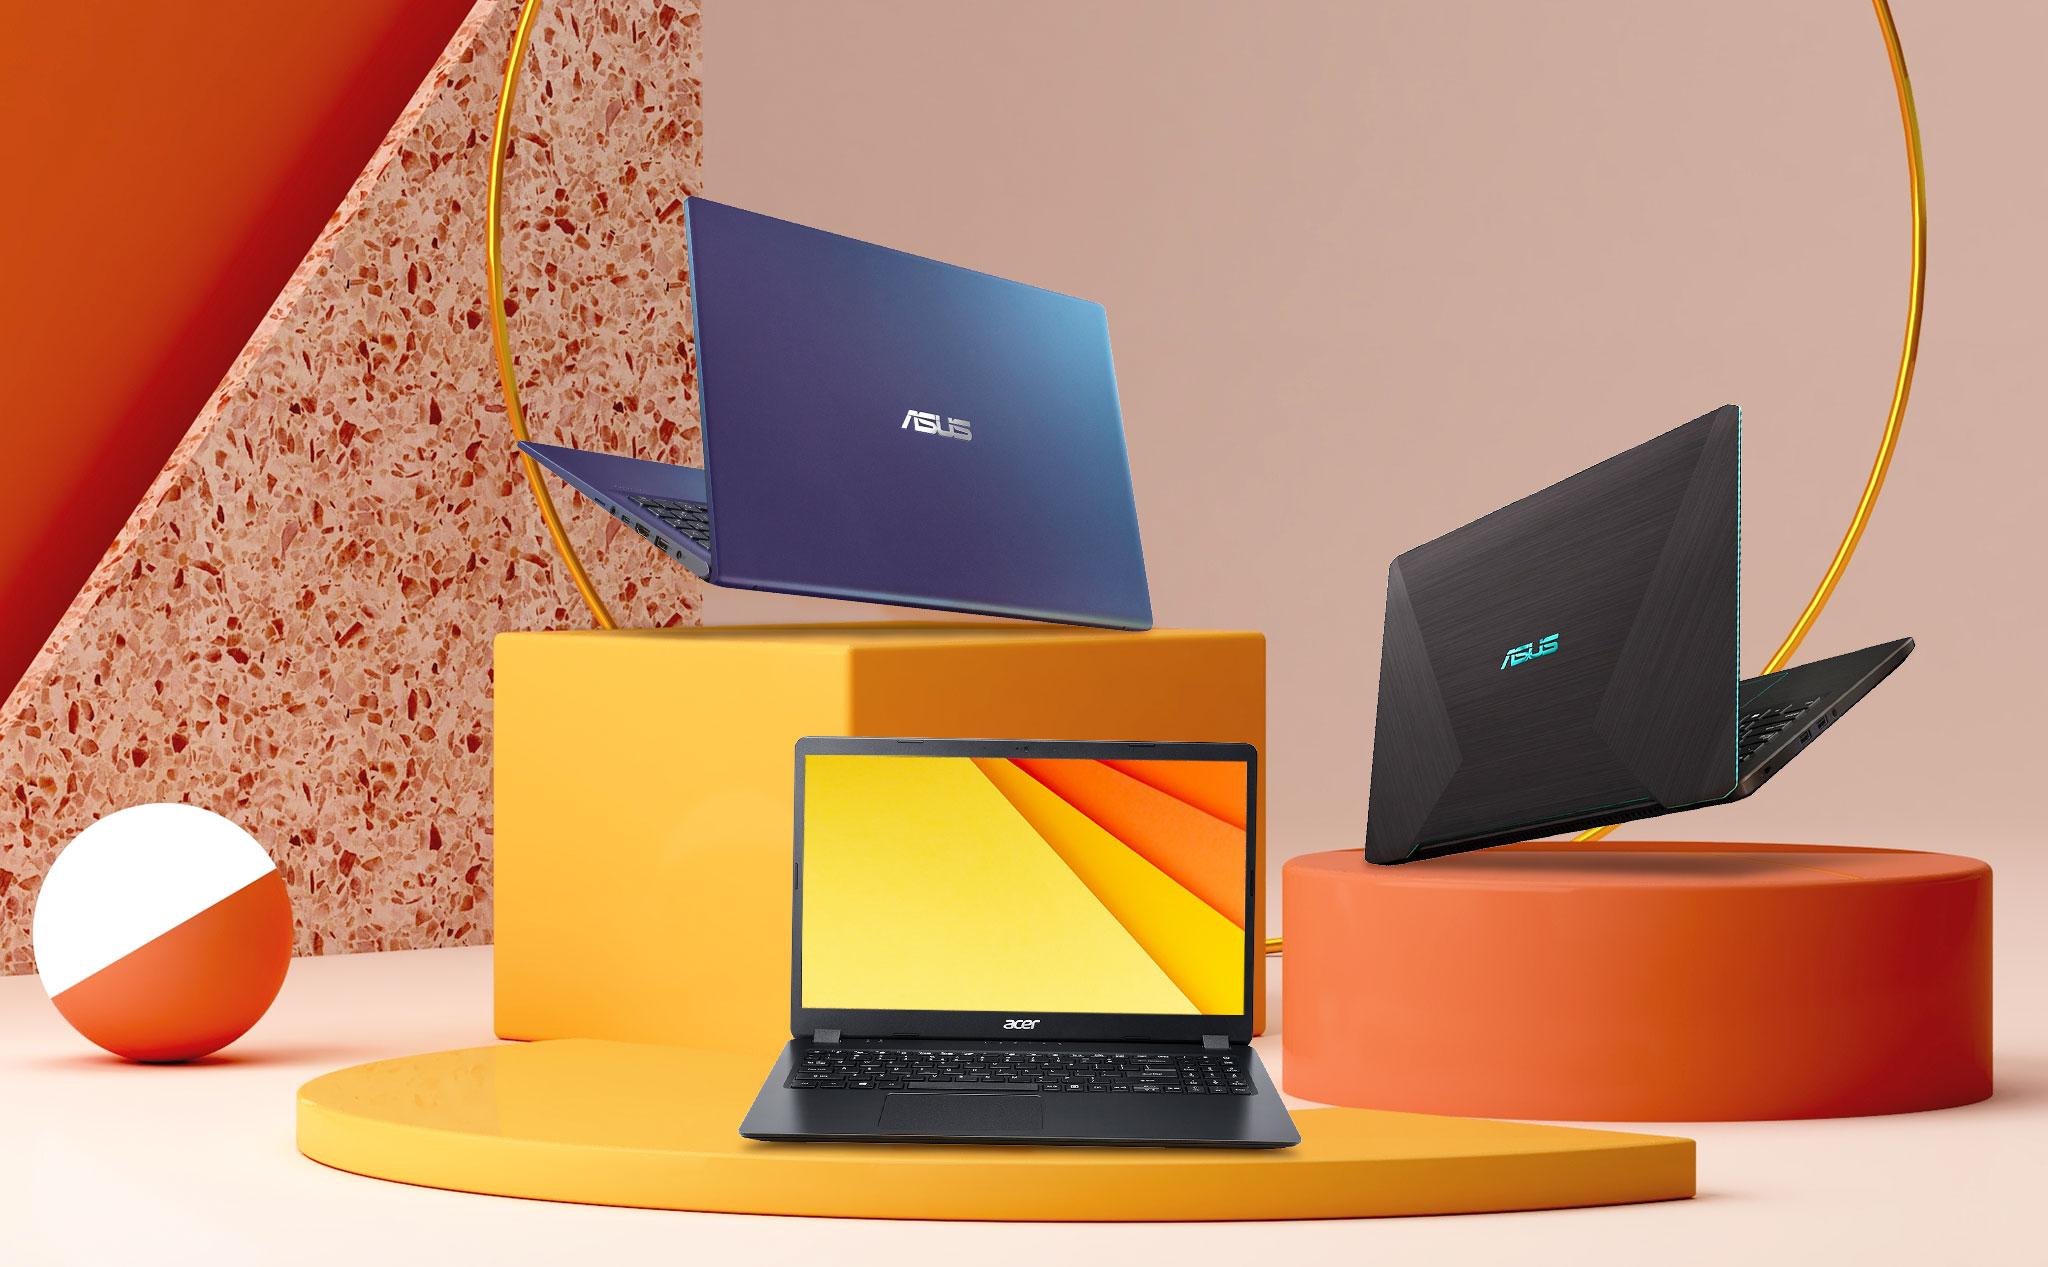 Chỉ với 10 triệu đồng, bạn đã có thể sở hữu một chiếc laptop Asus Vivobook. Với nhiều lựa chọn về cấu hình và màu sắc, chiếc laptop này không chỉ rẻ mà còn vô cùng hiệu quả trong công việc của bạn. Điều này thực sự là một sự lựa chọn tuyệt vời.